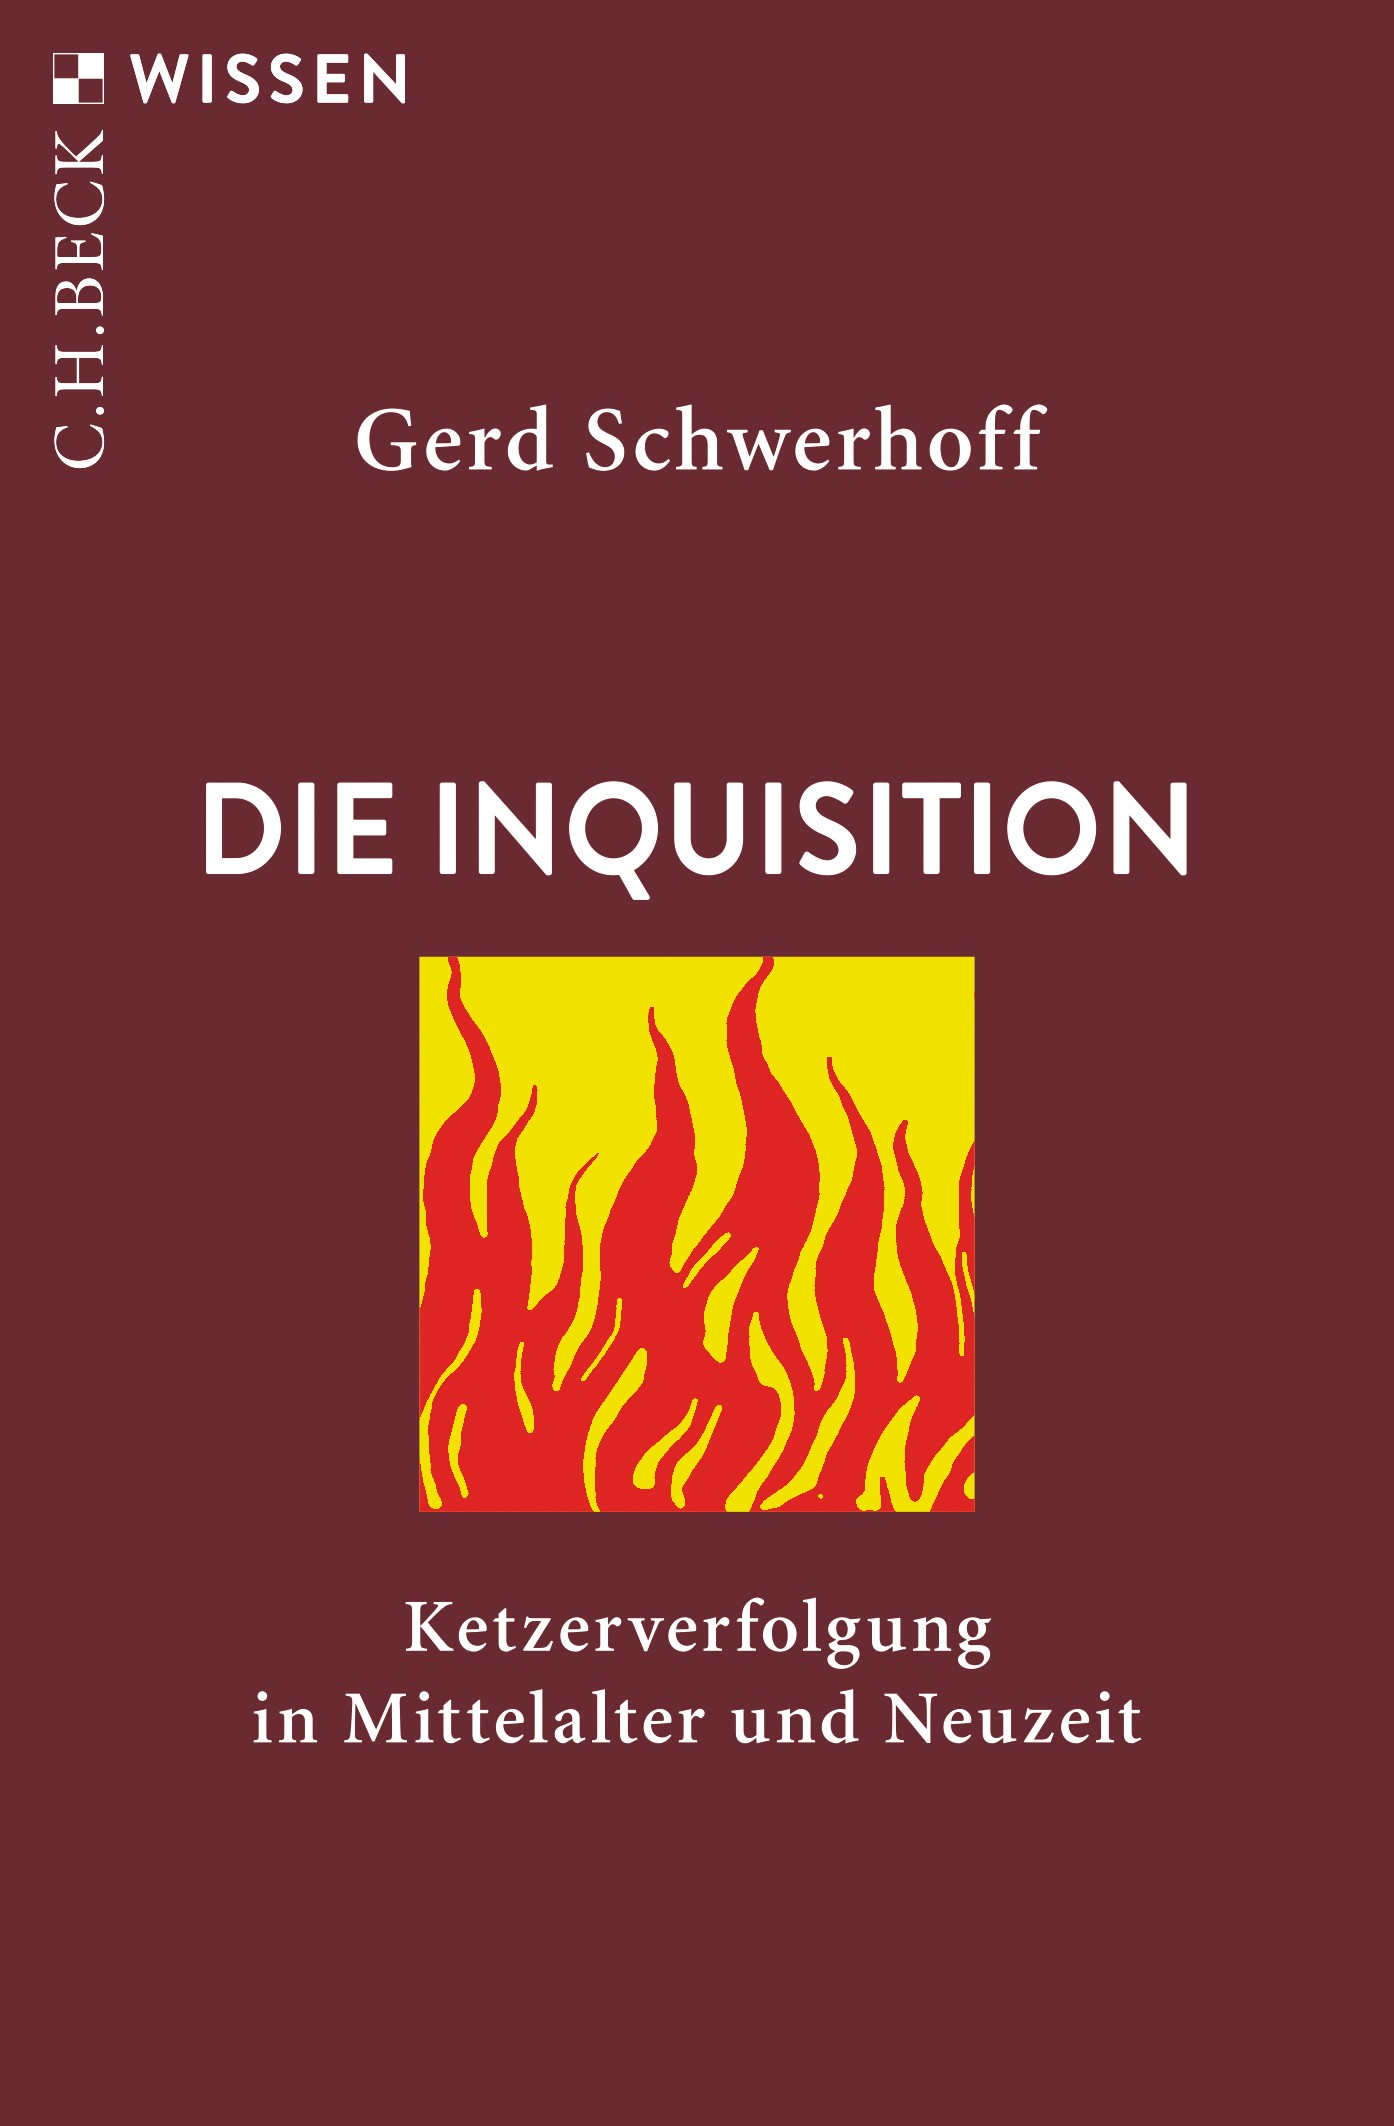 Cover: Schwerhoff, Gerd, Die Inquisition